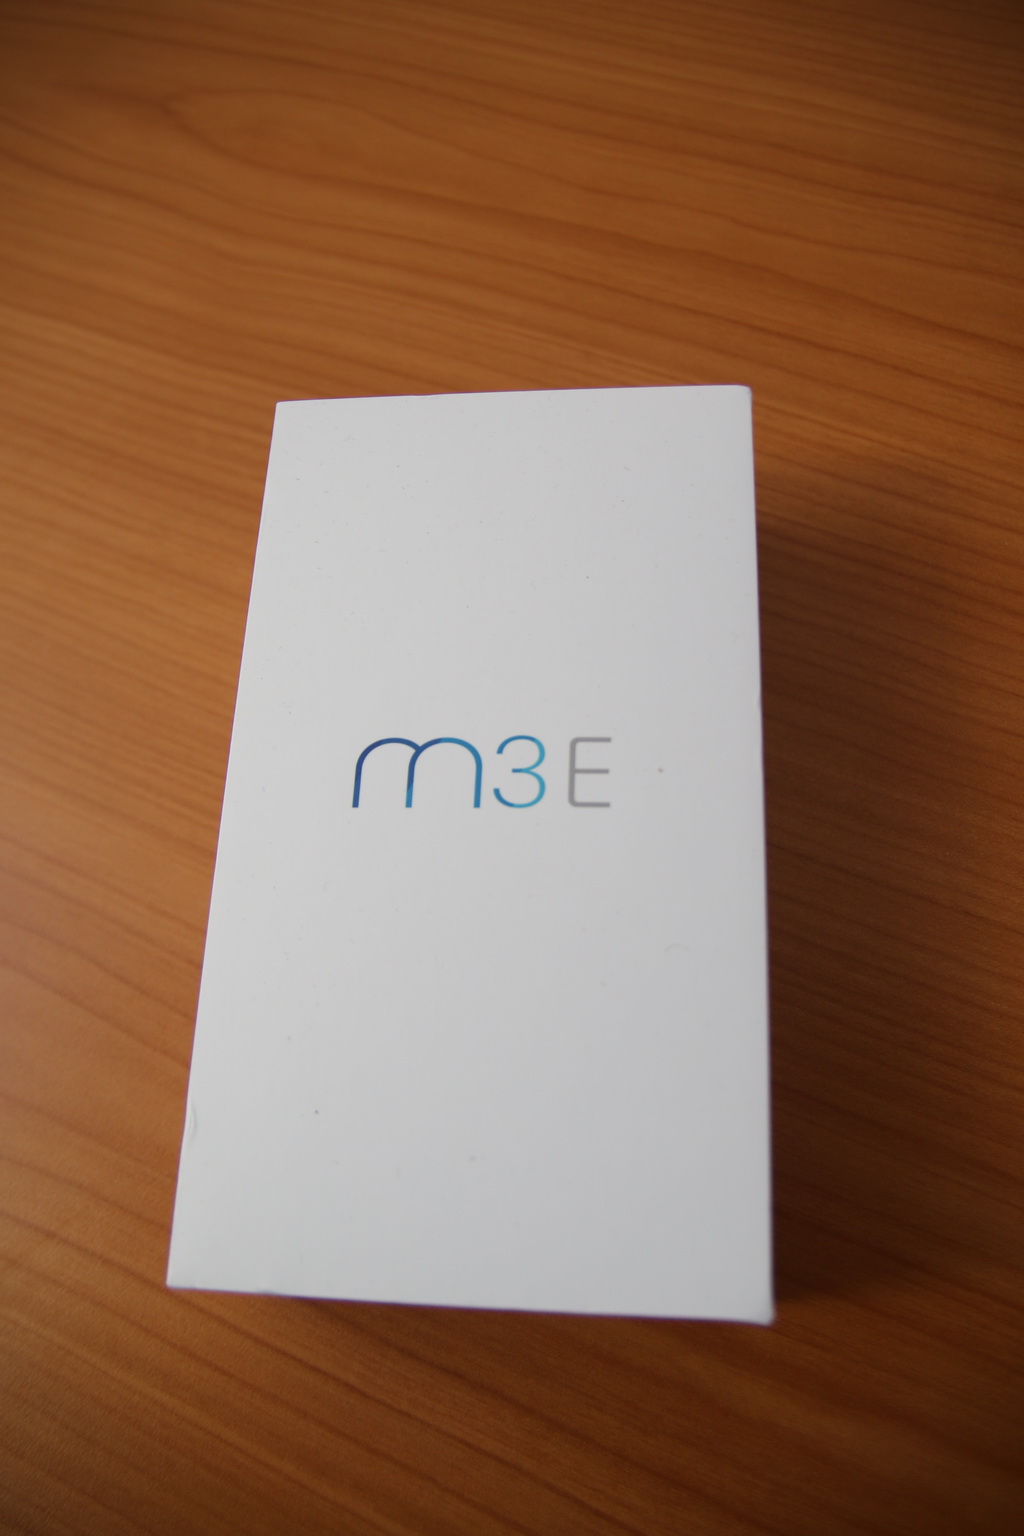 Test du smartphone Meizu M3 E